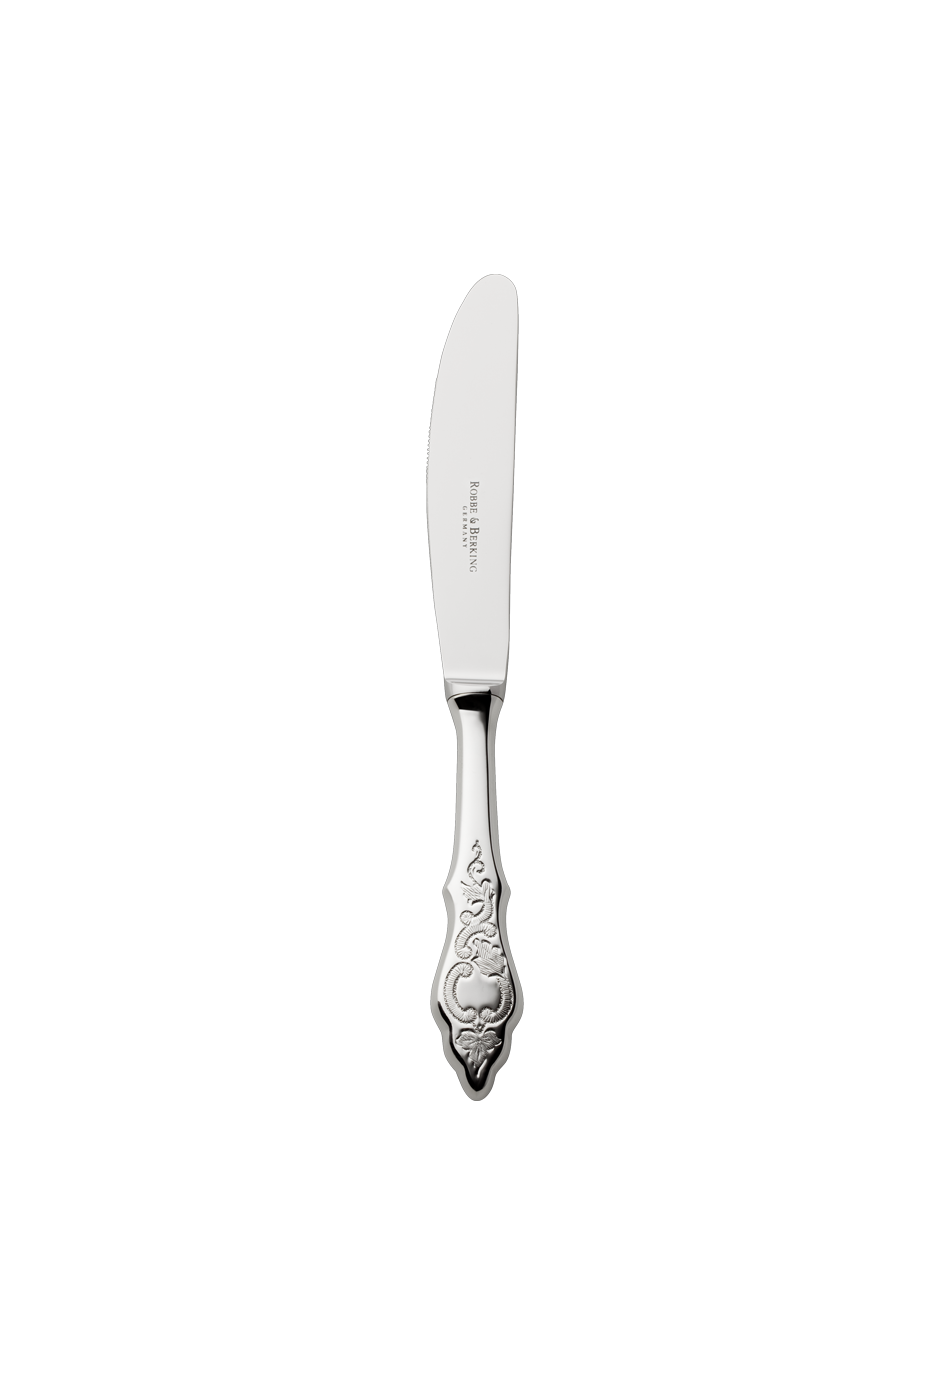 Ostfriesen Children's Knife (925 Sterling Silver)